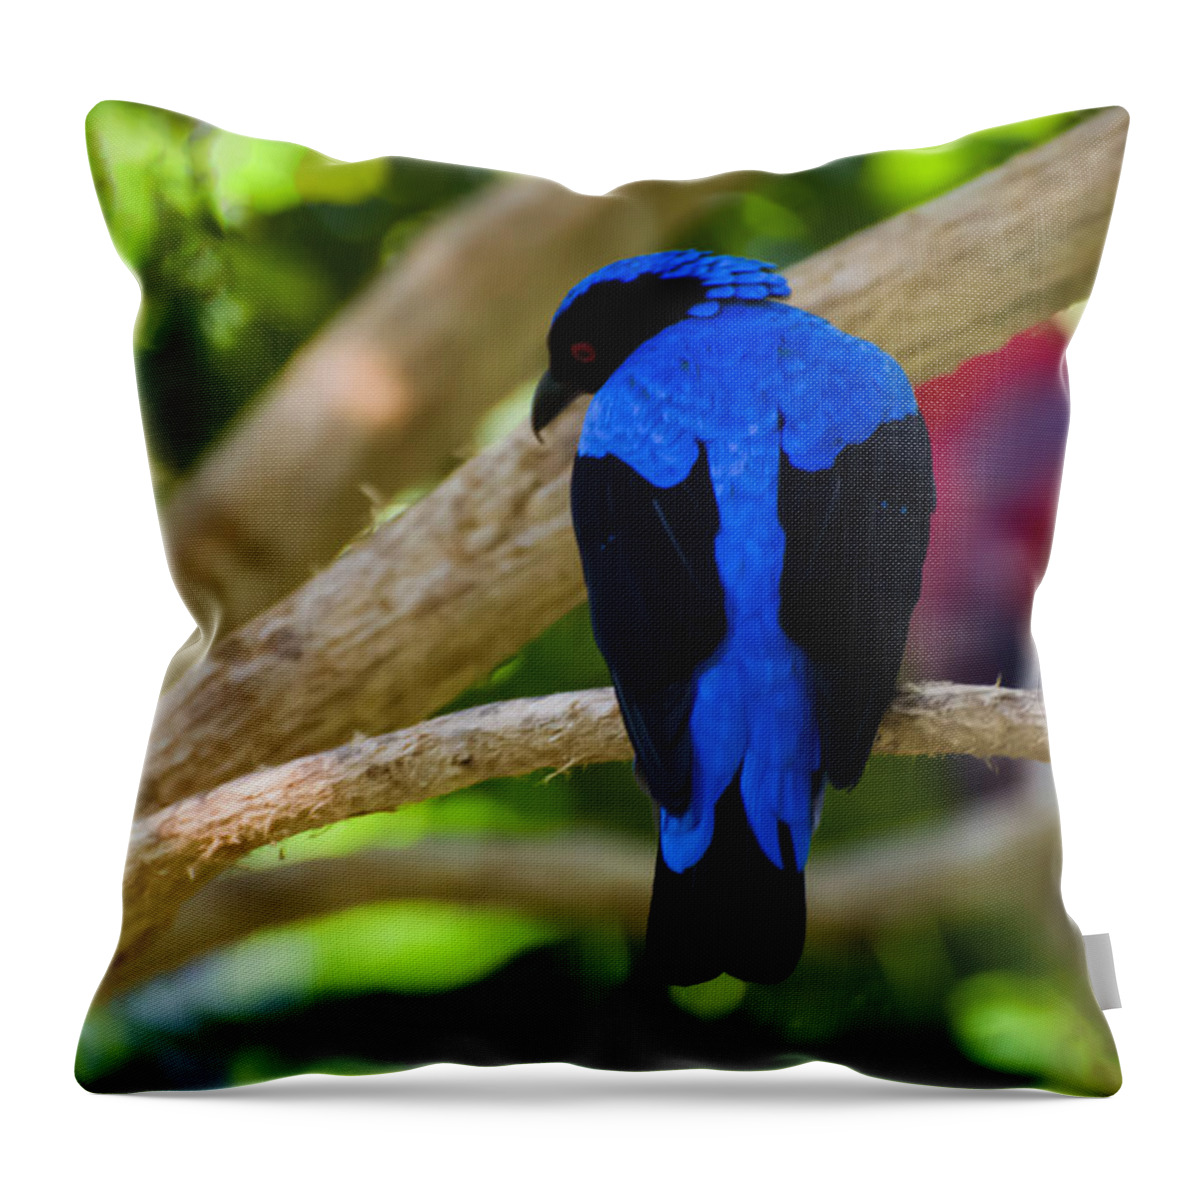 Asian Fairy Bluebird Throw Pillow featuring the photograph Asian Fairy Bluebird by Flees Photos